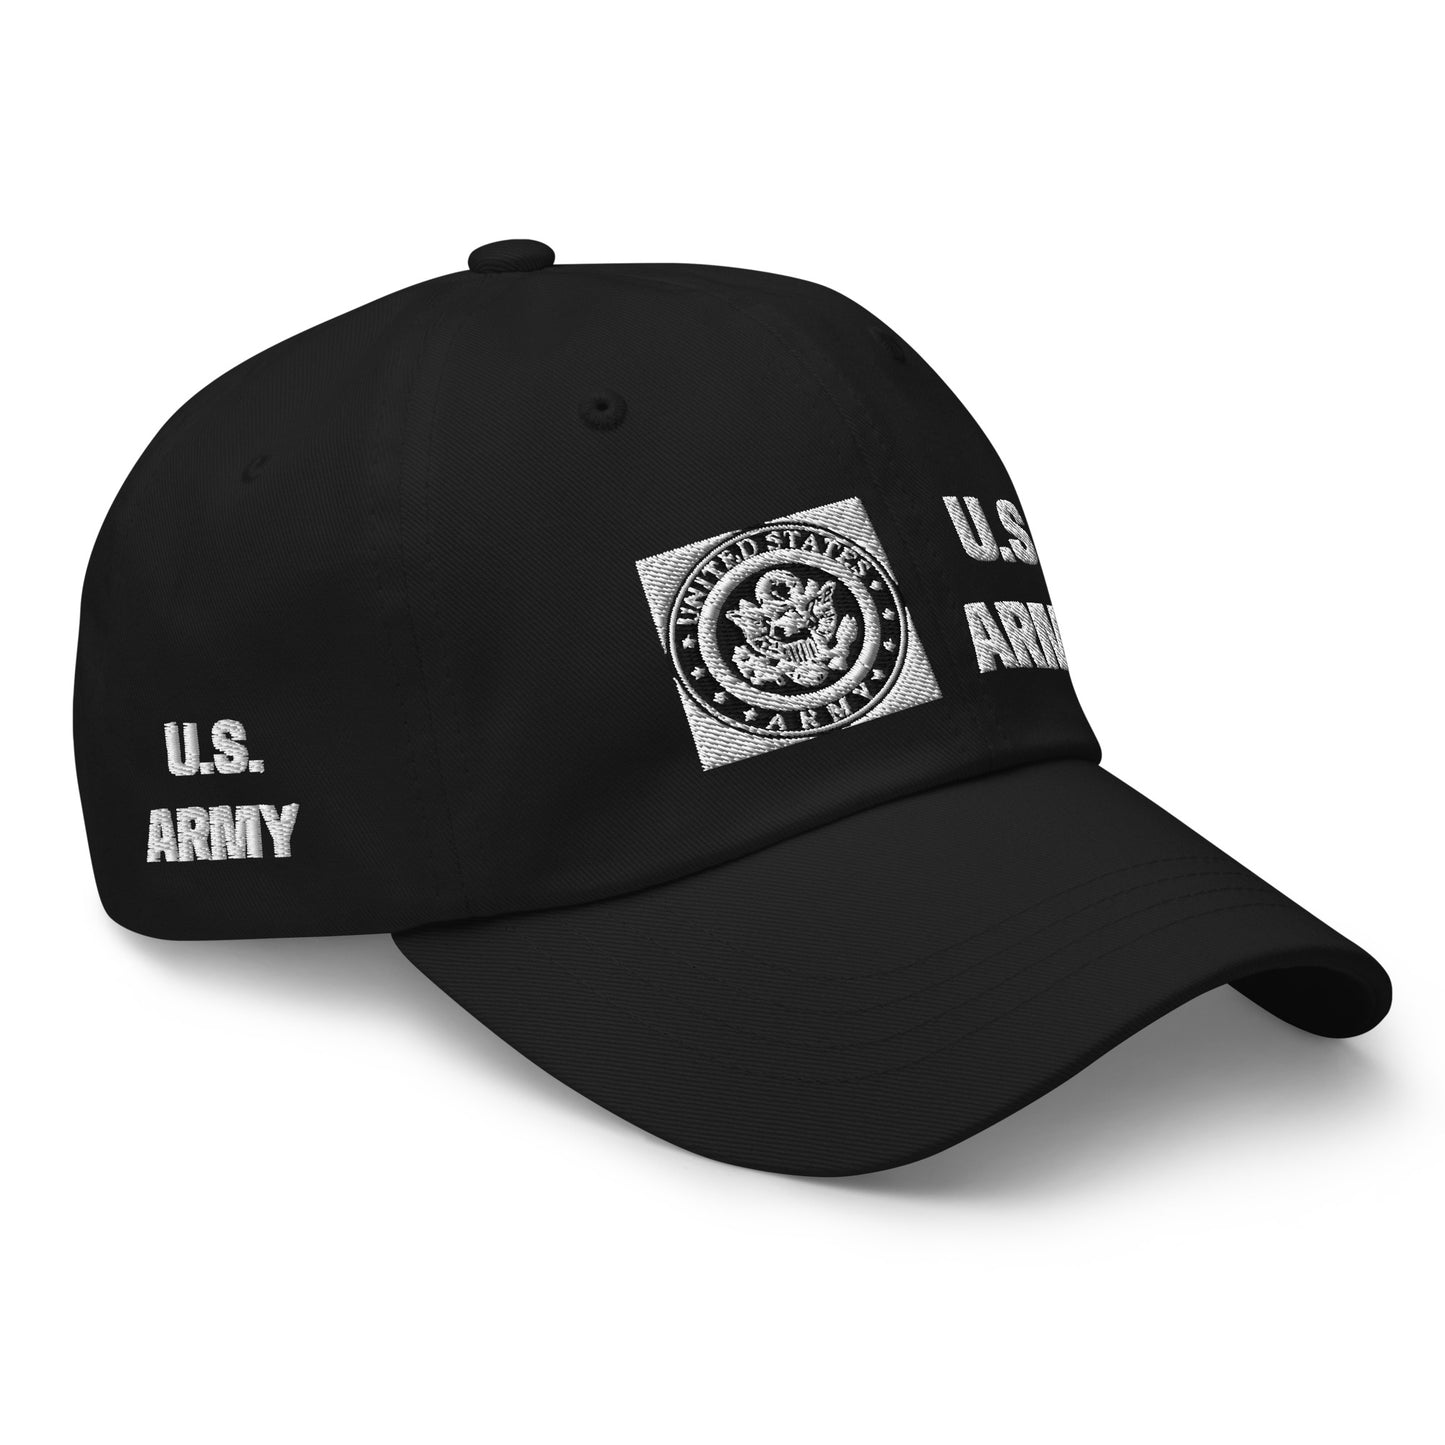 Dad hat - U. S. Army Emblem